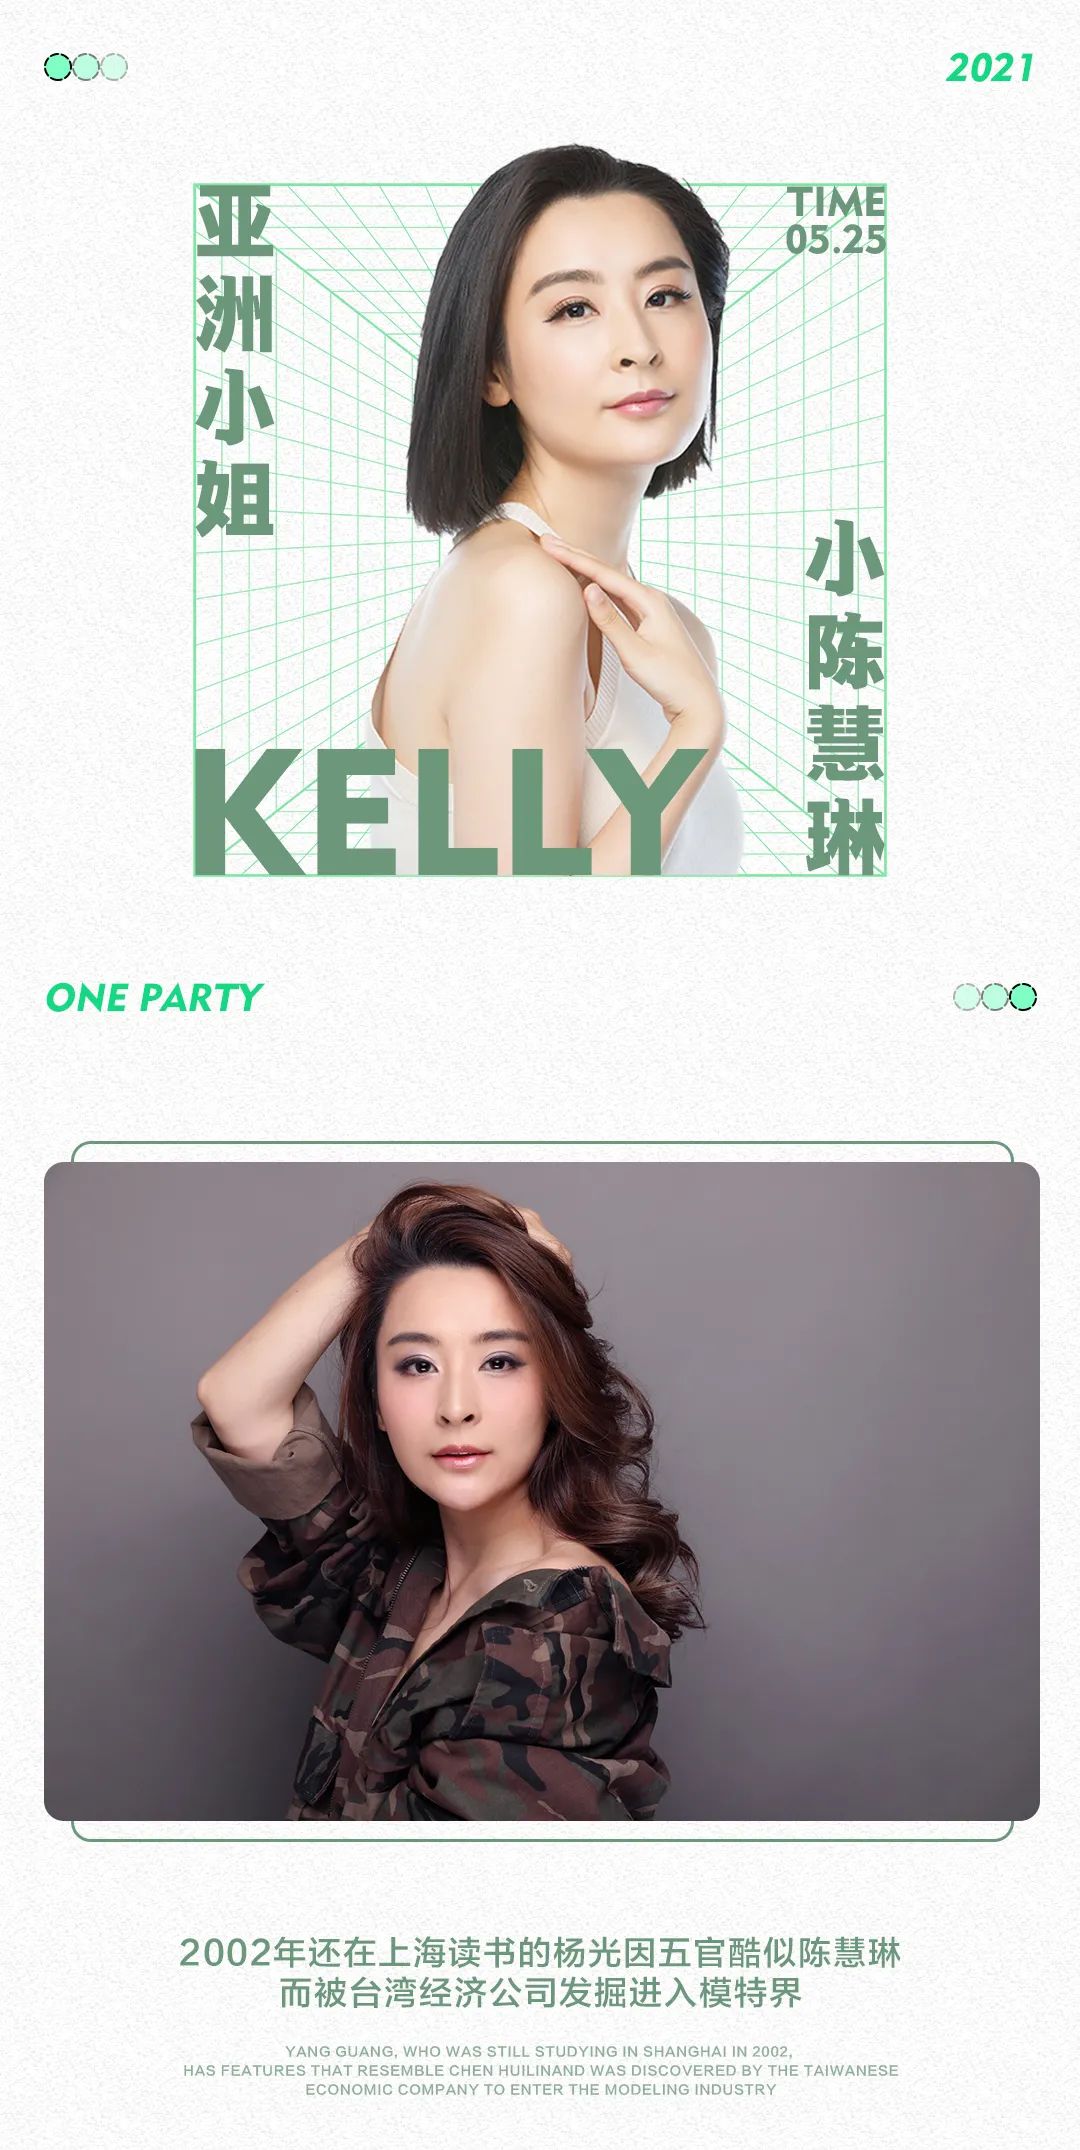 ONE PARTY|05.25#女神降临#亚洲小姐冠军-杨光，感受独特的女神魅力-茂名壹号派对酒吧/ONE PARTY